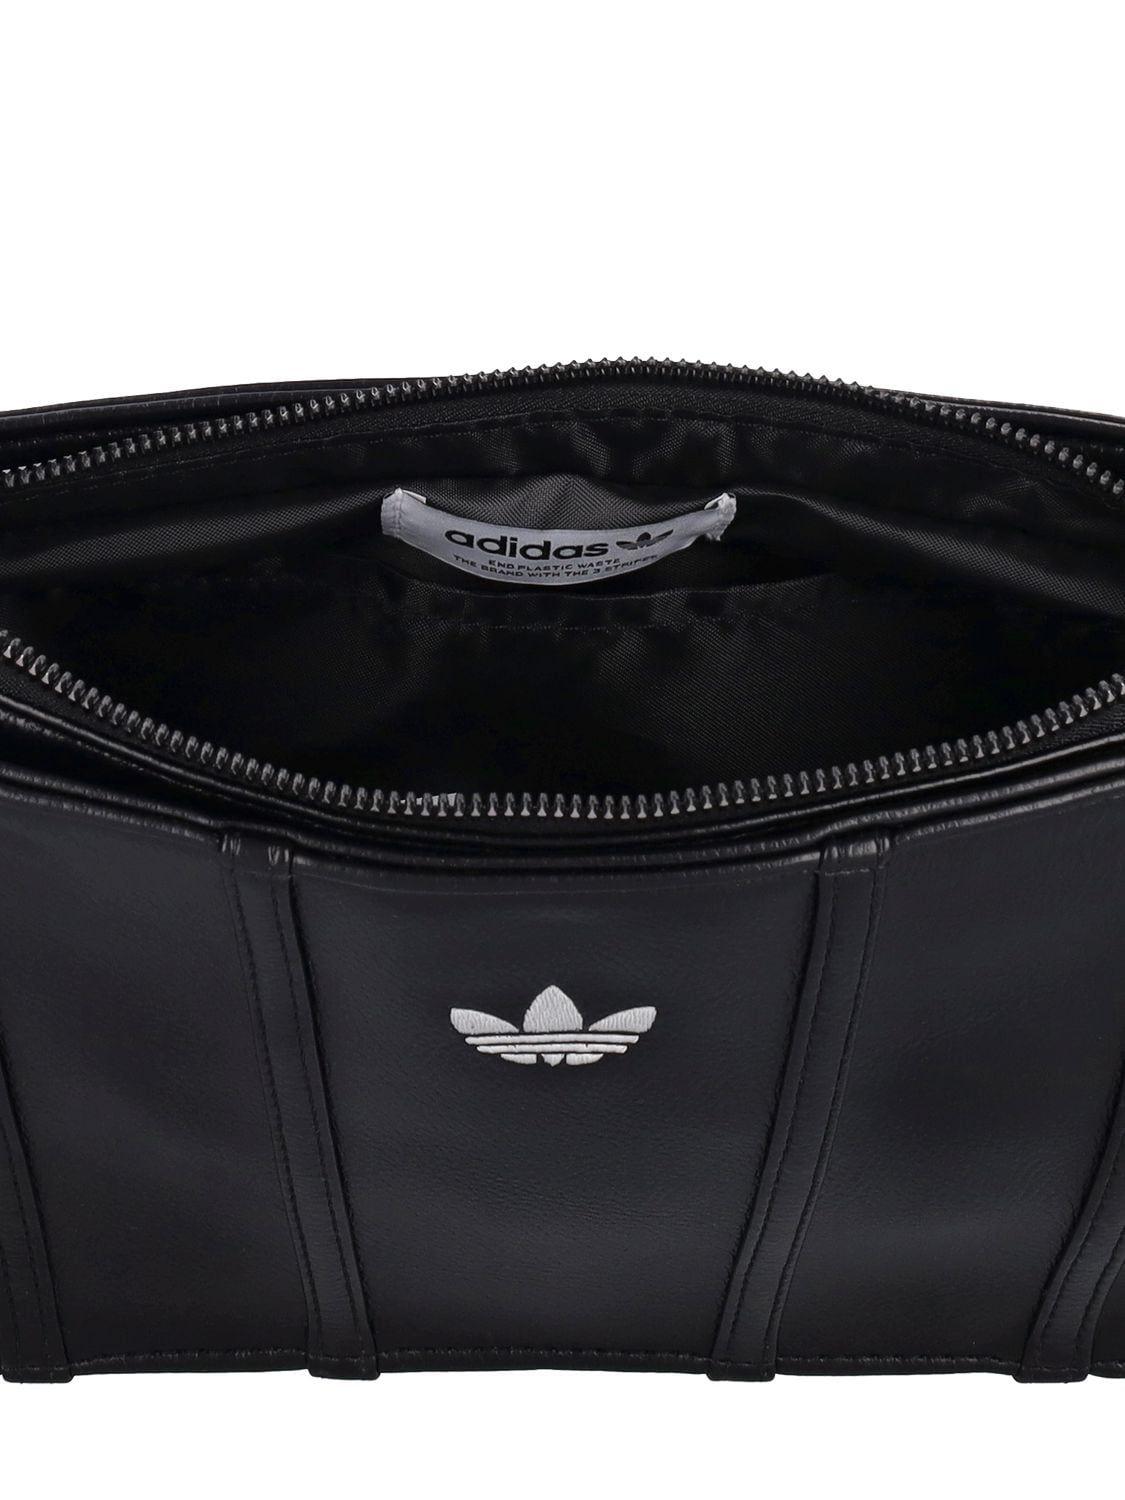 adidas Originals Airline Shoulder Bag Black | Lyst